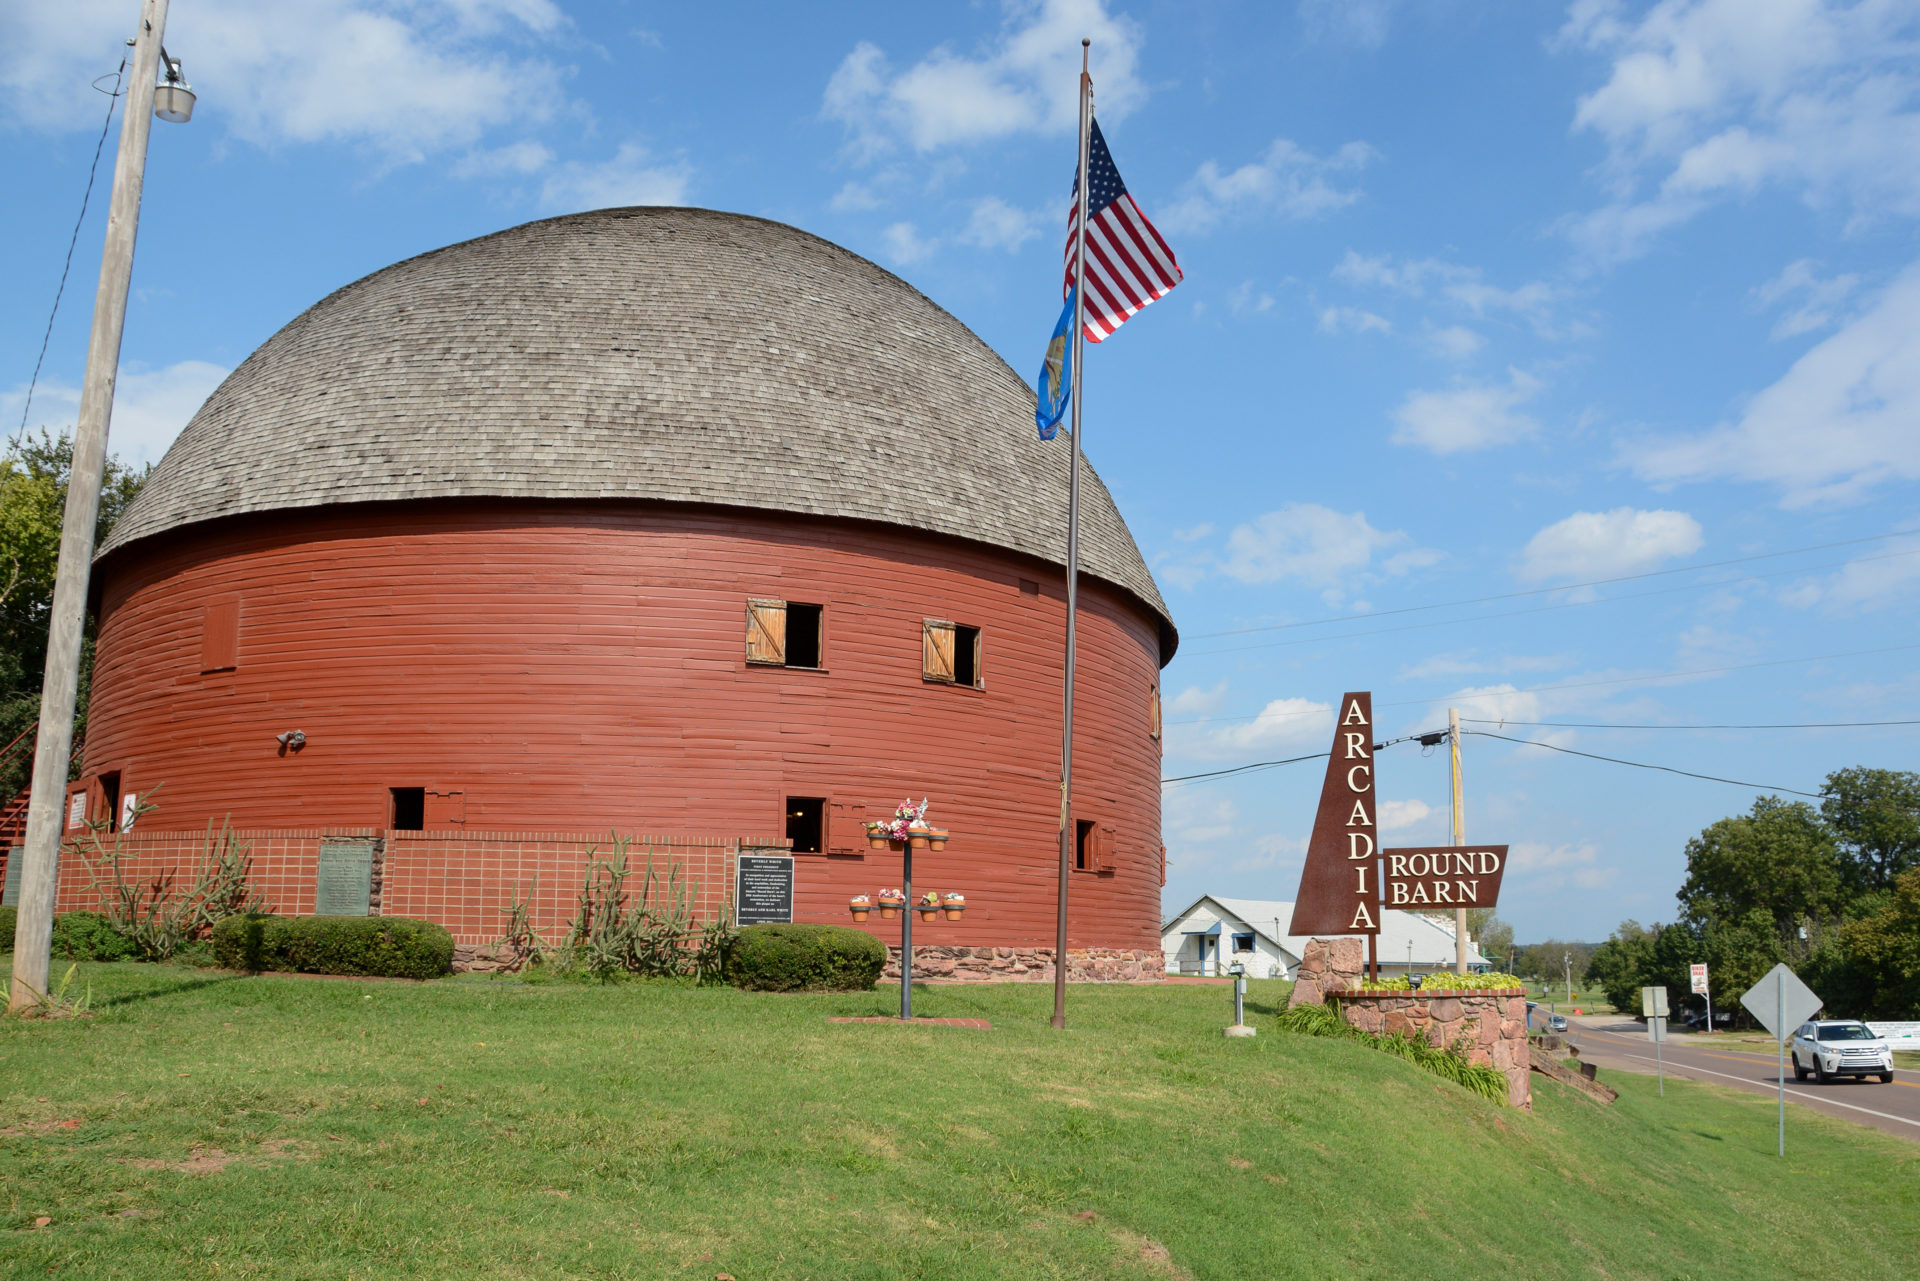 Der Arcadia Round Barn ist eines der beliebtesten Fotomotive an der Route 66 in Oklahoma